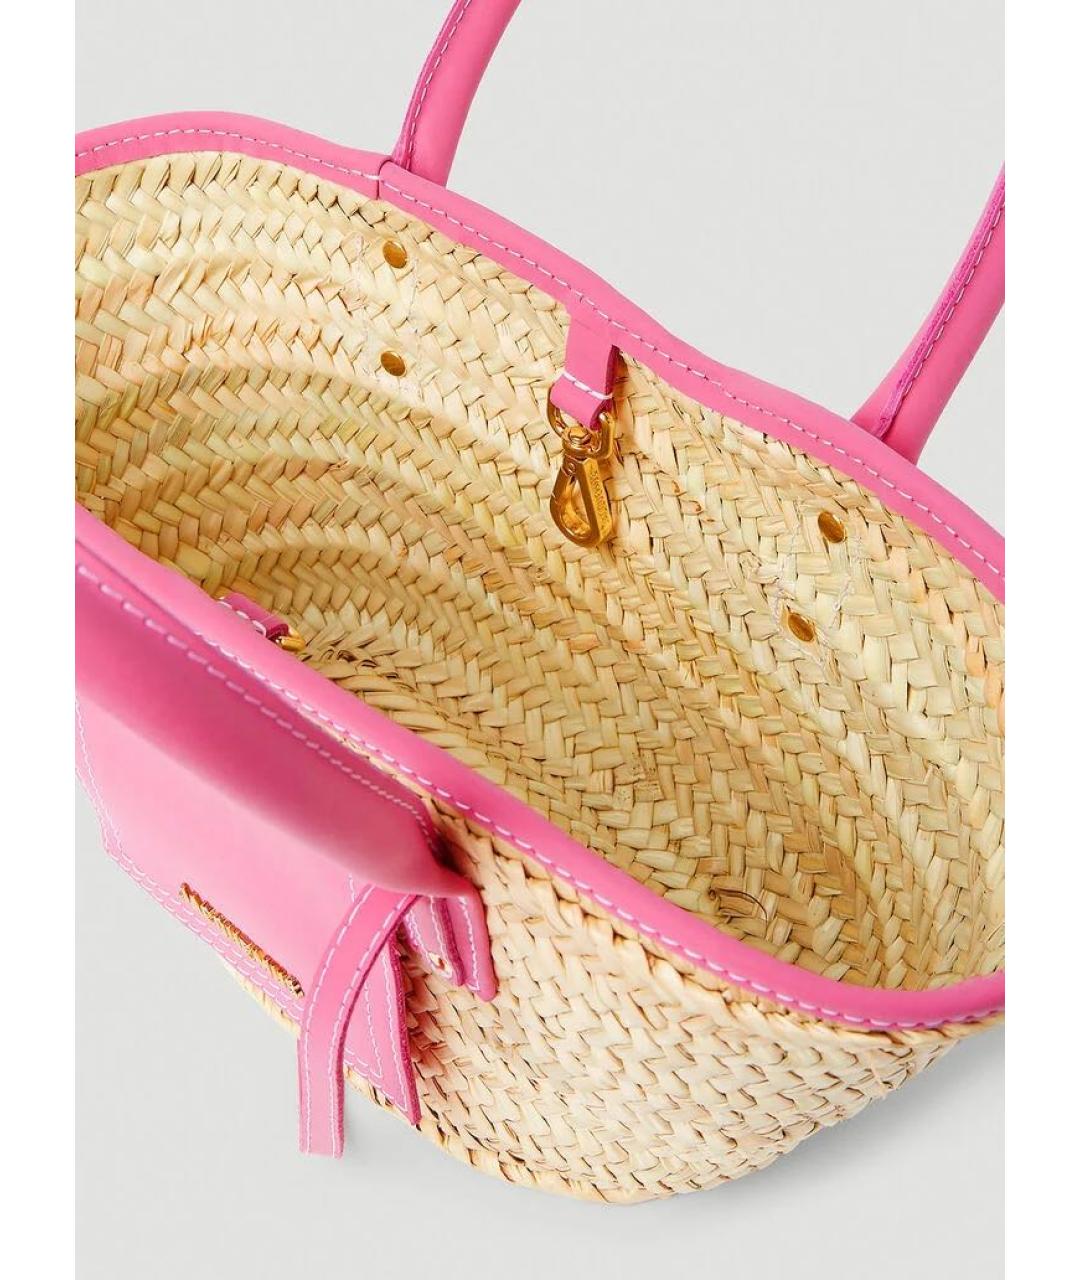 JACQUEMUS Розовая пляжная сумка, фото 4